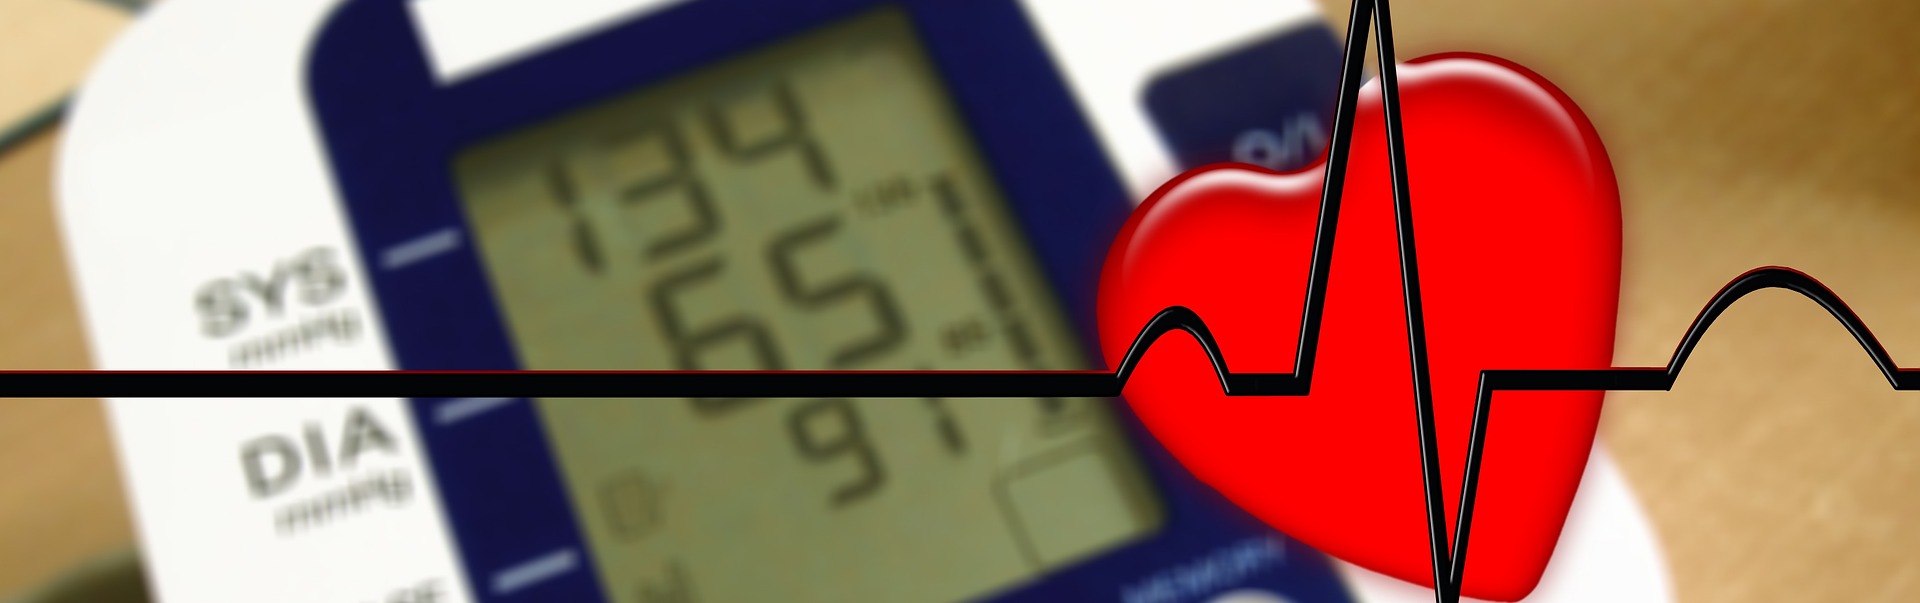 《中国高血压患者心率管理多<font color="red">学科</font>专家共识(2021年版)》解读